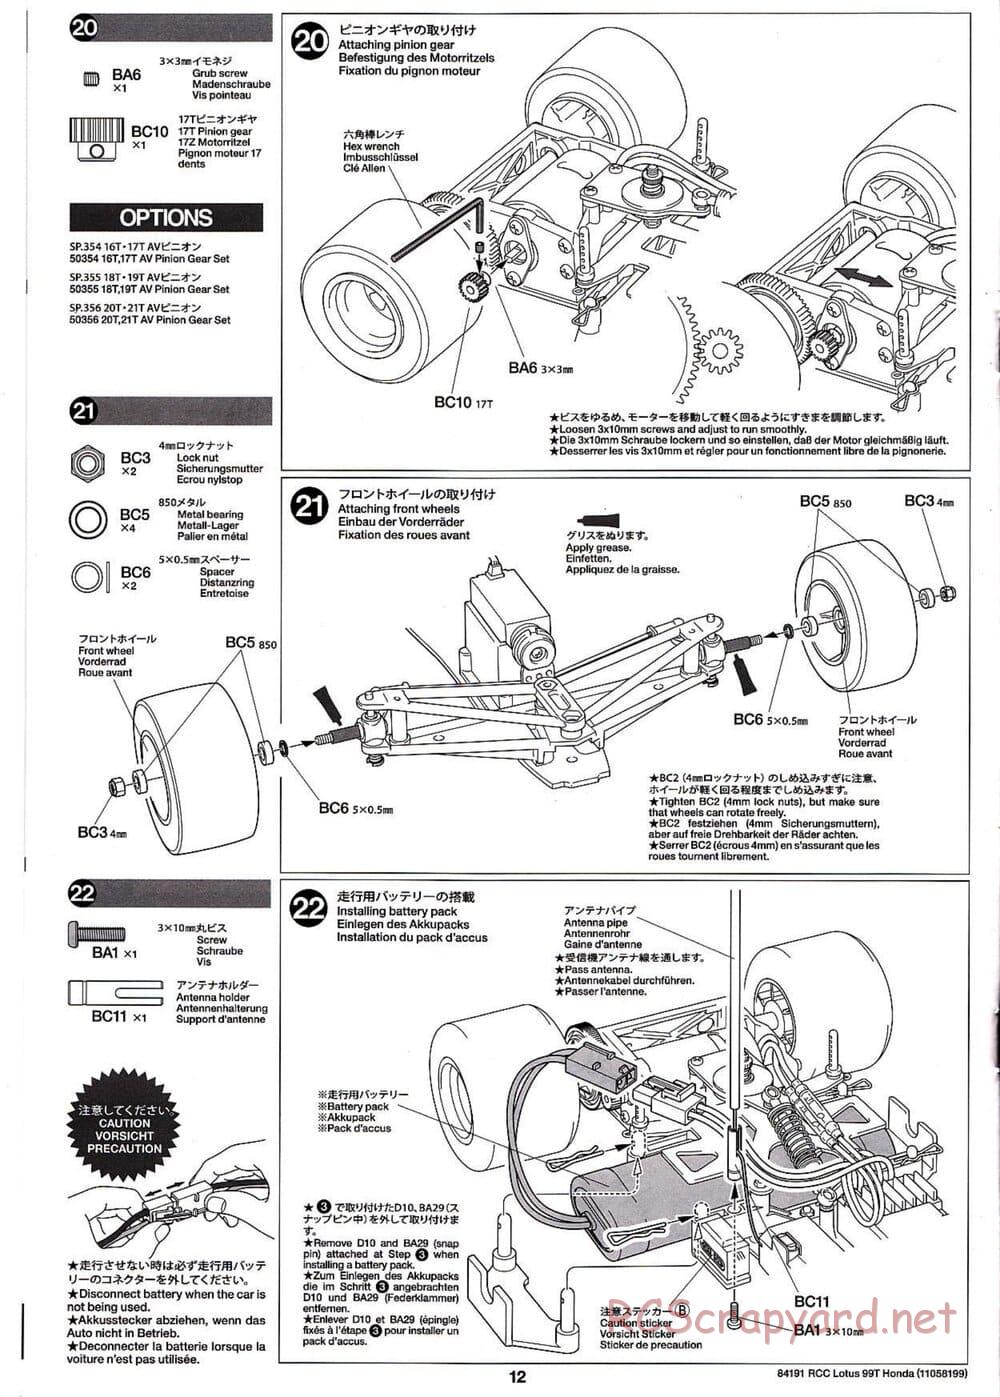 Tamiya - Team Lotus 99T Honda - F103 Chassis - Manual - Page 12